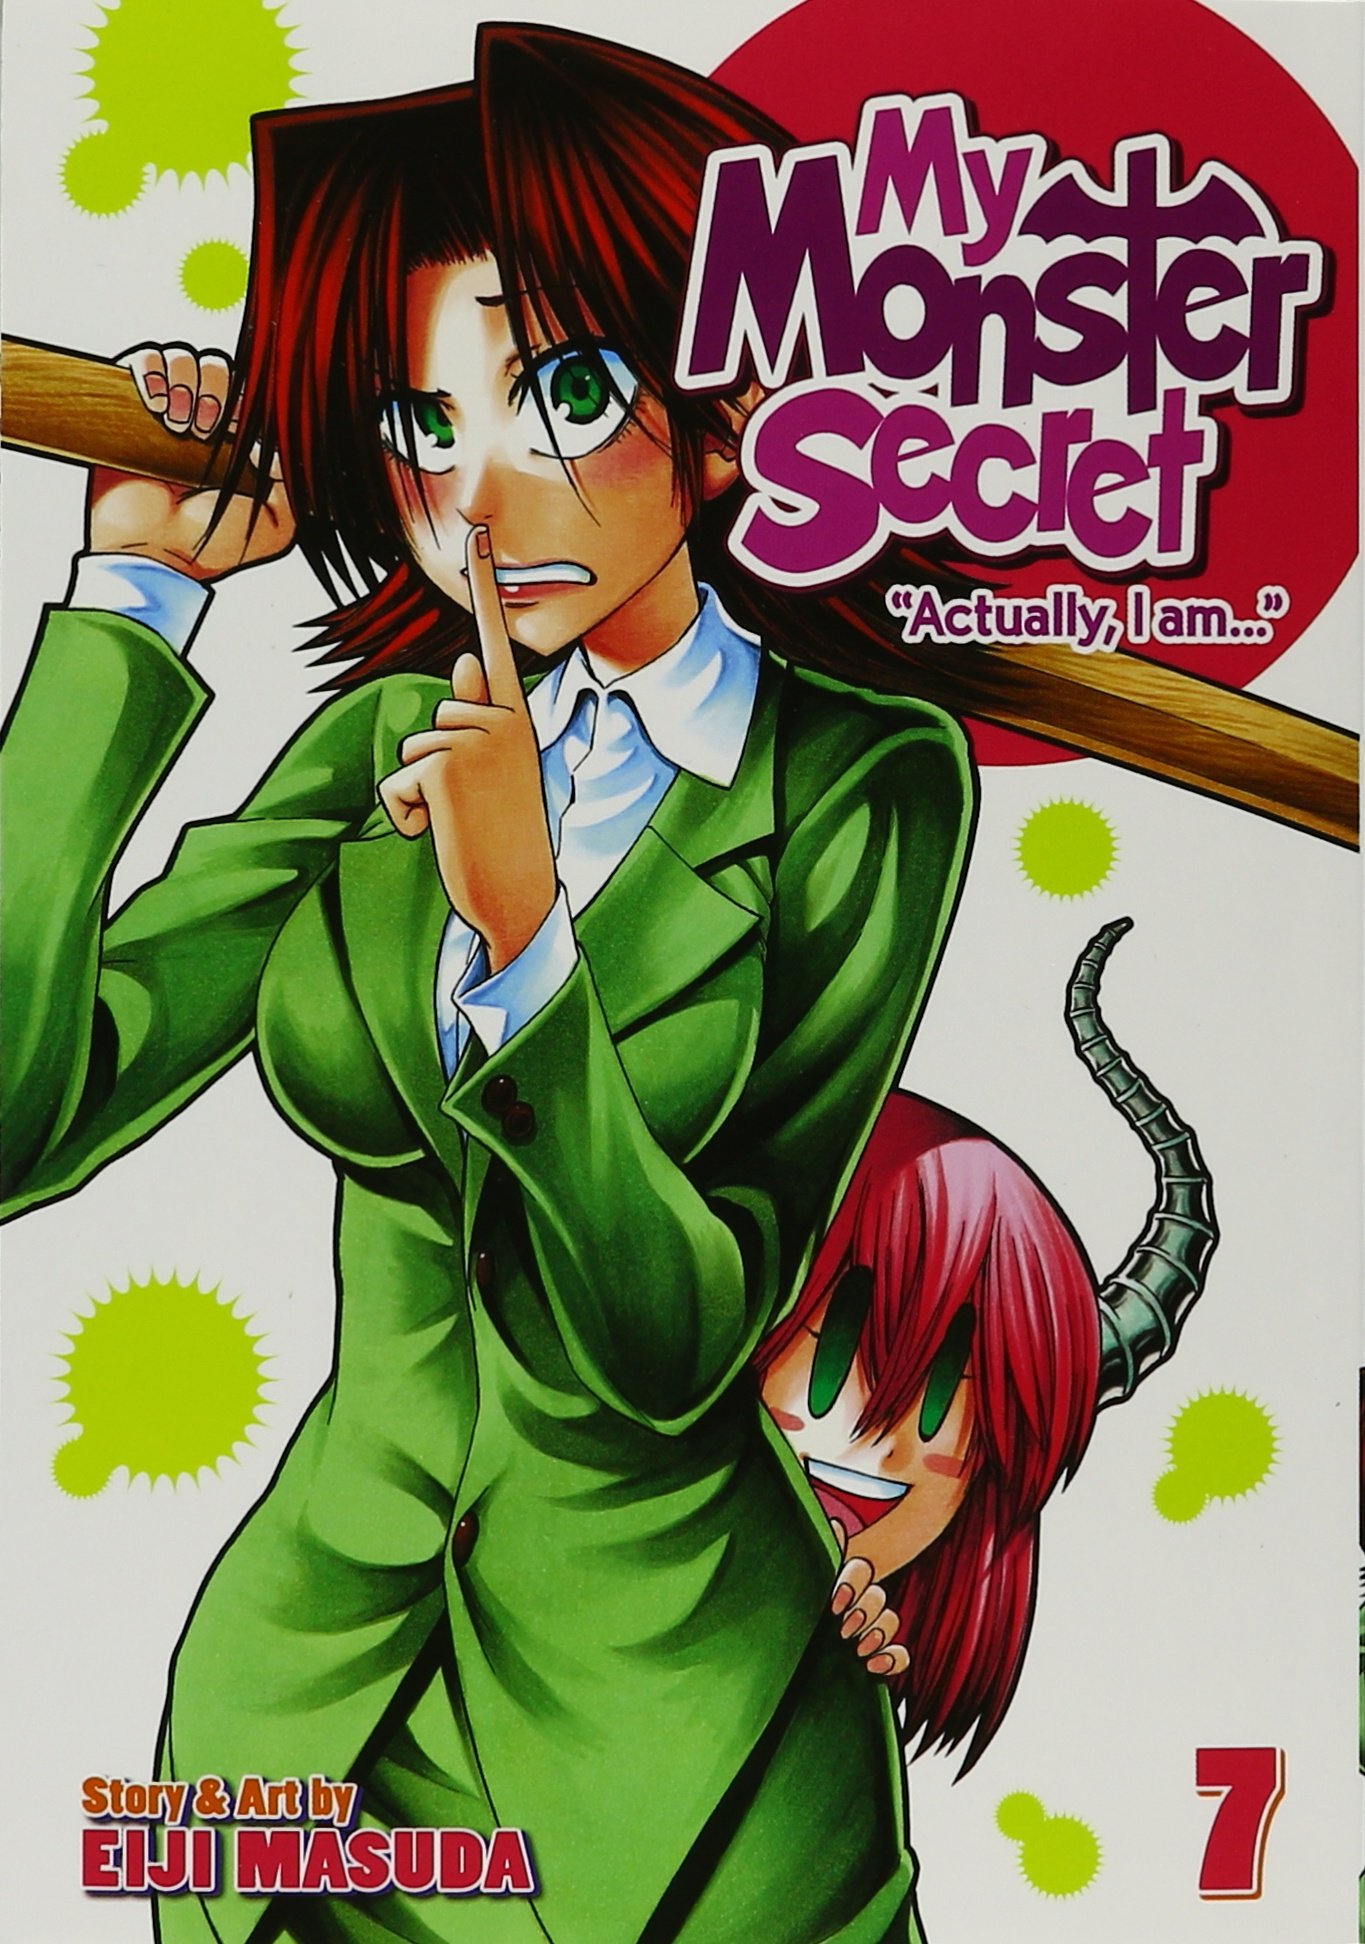 My Monster Secret Volume 07 Manga Review - AstroNerdBoy's Anime & Manga  Blog | AstroNerdBoy's Anime & Manga Blog